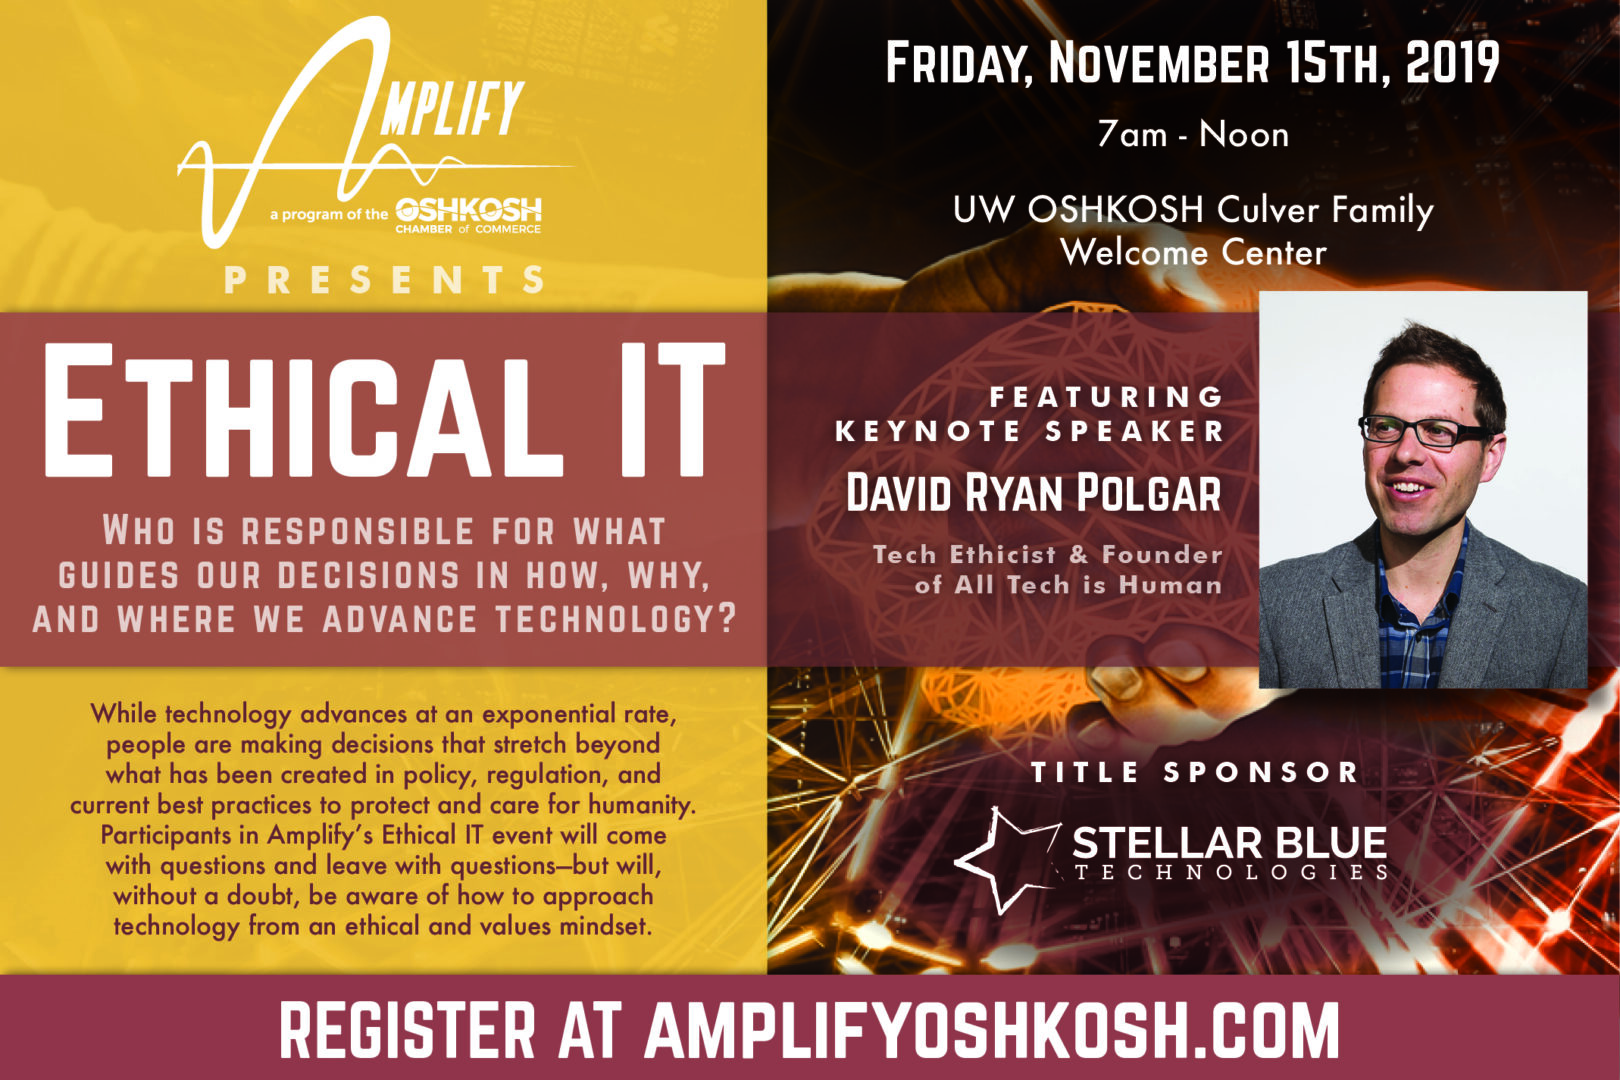 Amplify Oshkosh Ethical IT Conference Recap